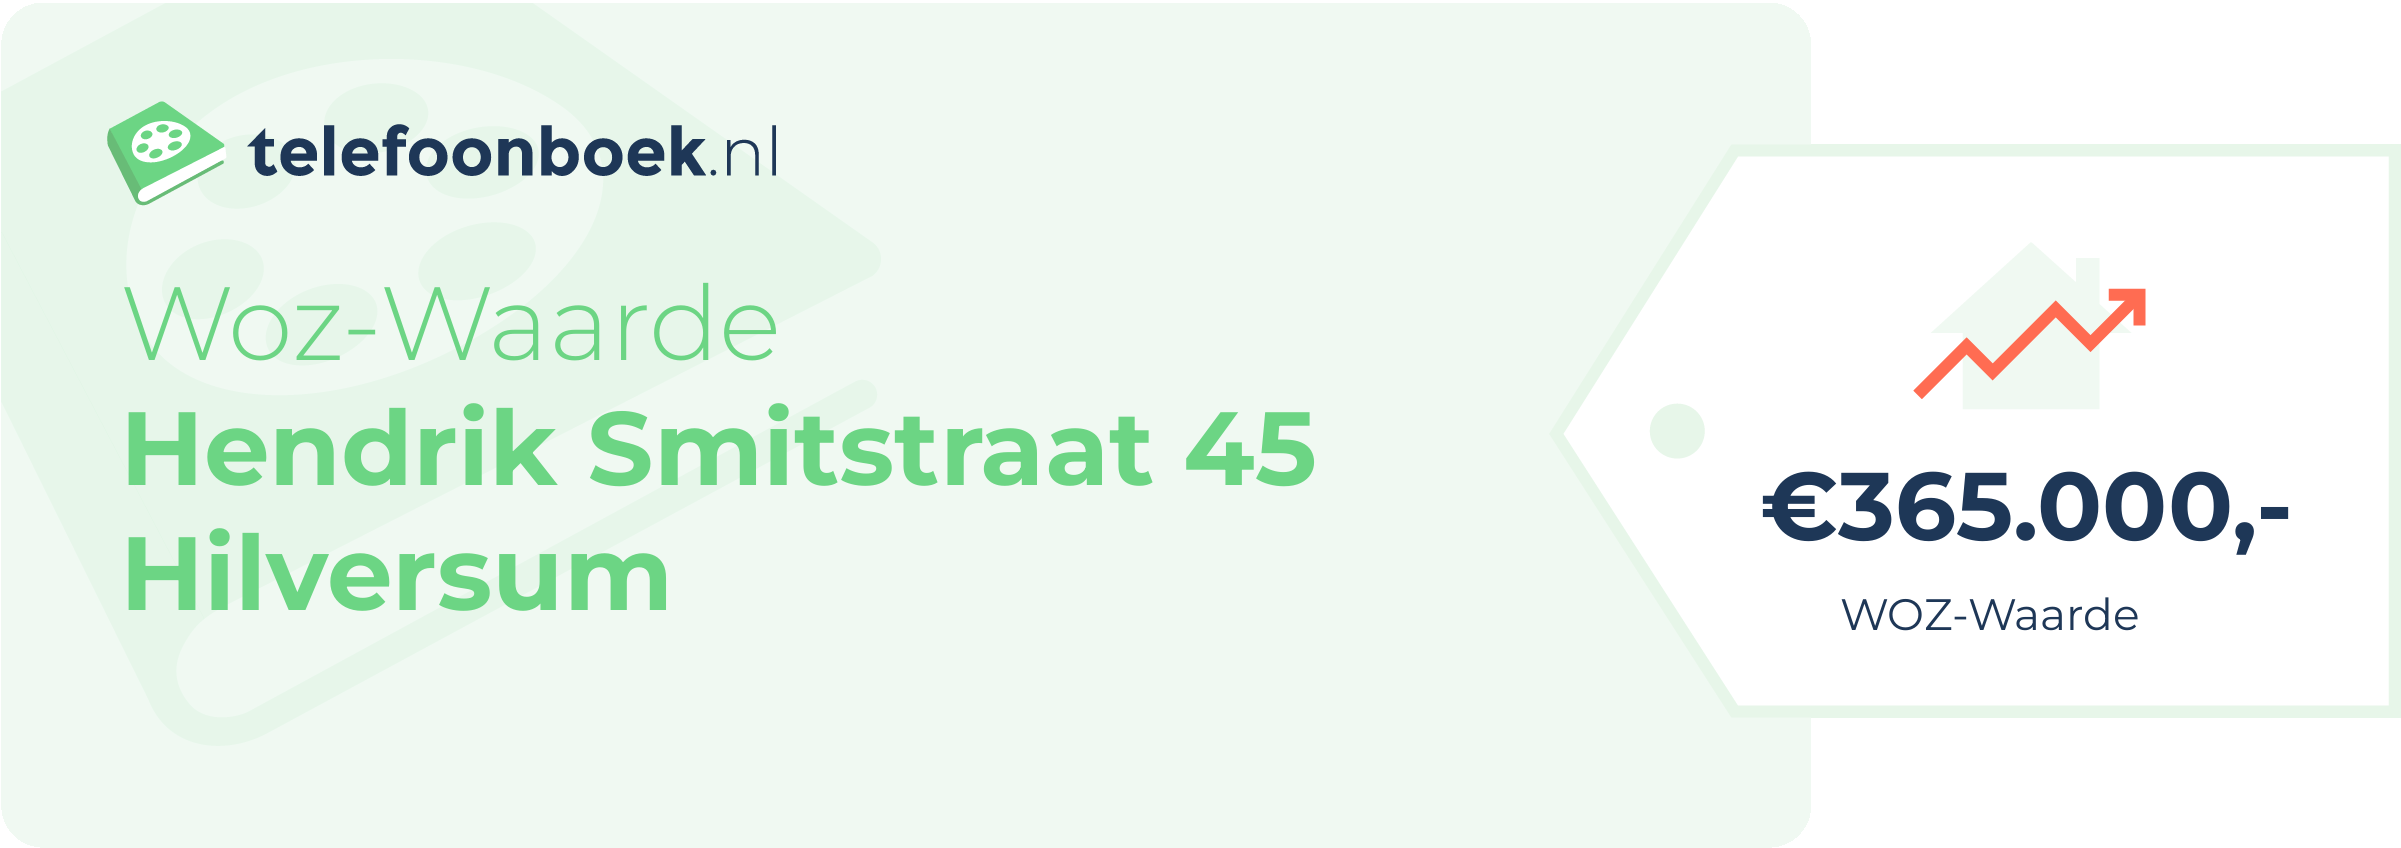 WOZ-waarde Hendrik Smitstraat 45 Hilversum